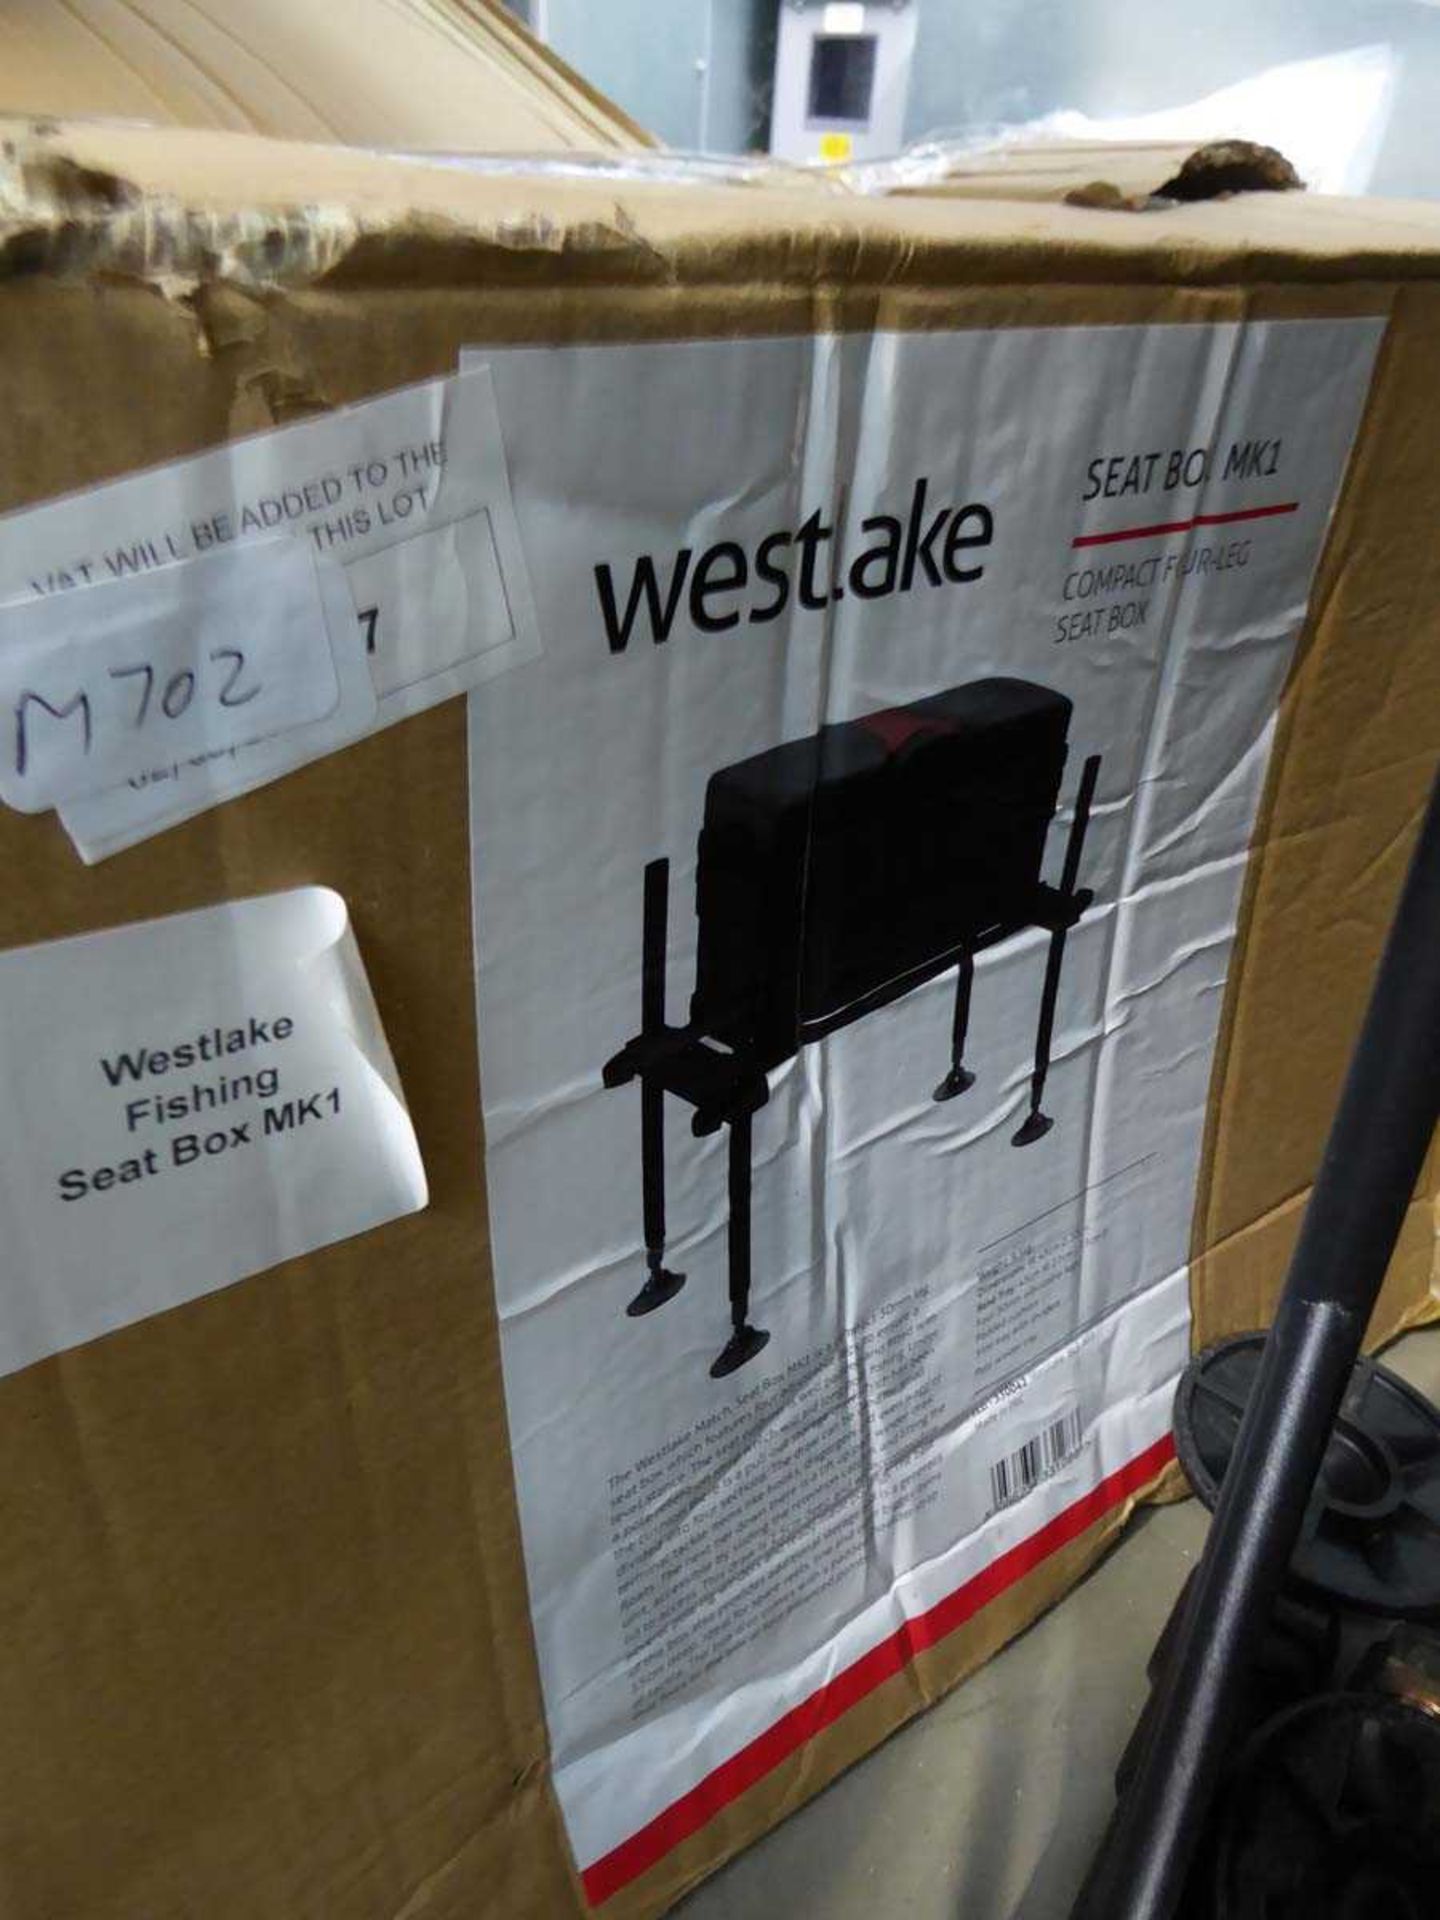 Westlake fishing seat box - Image 2 of 2